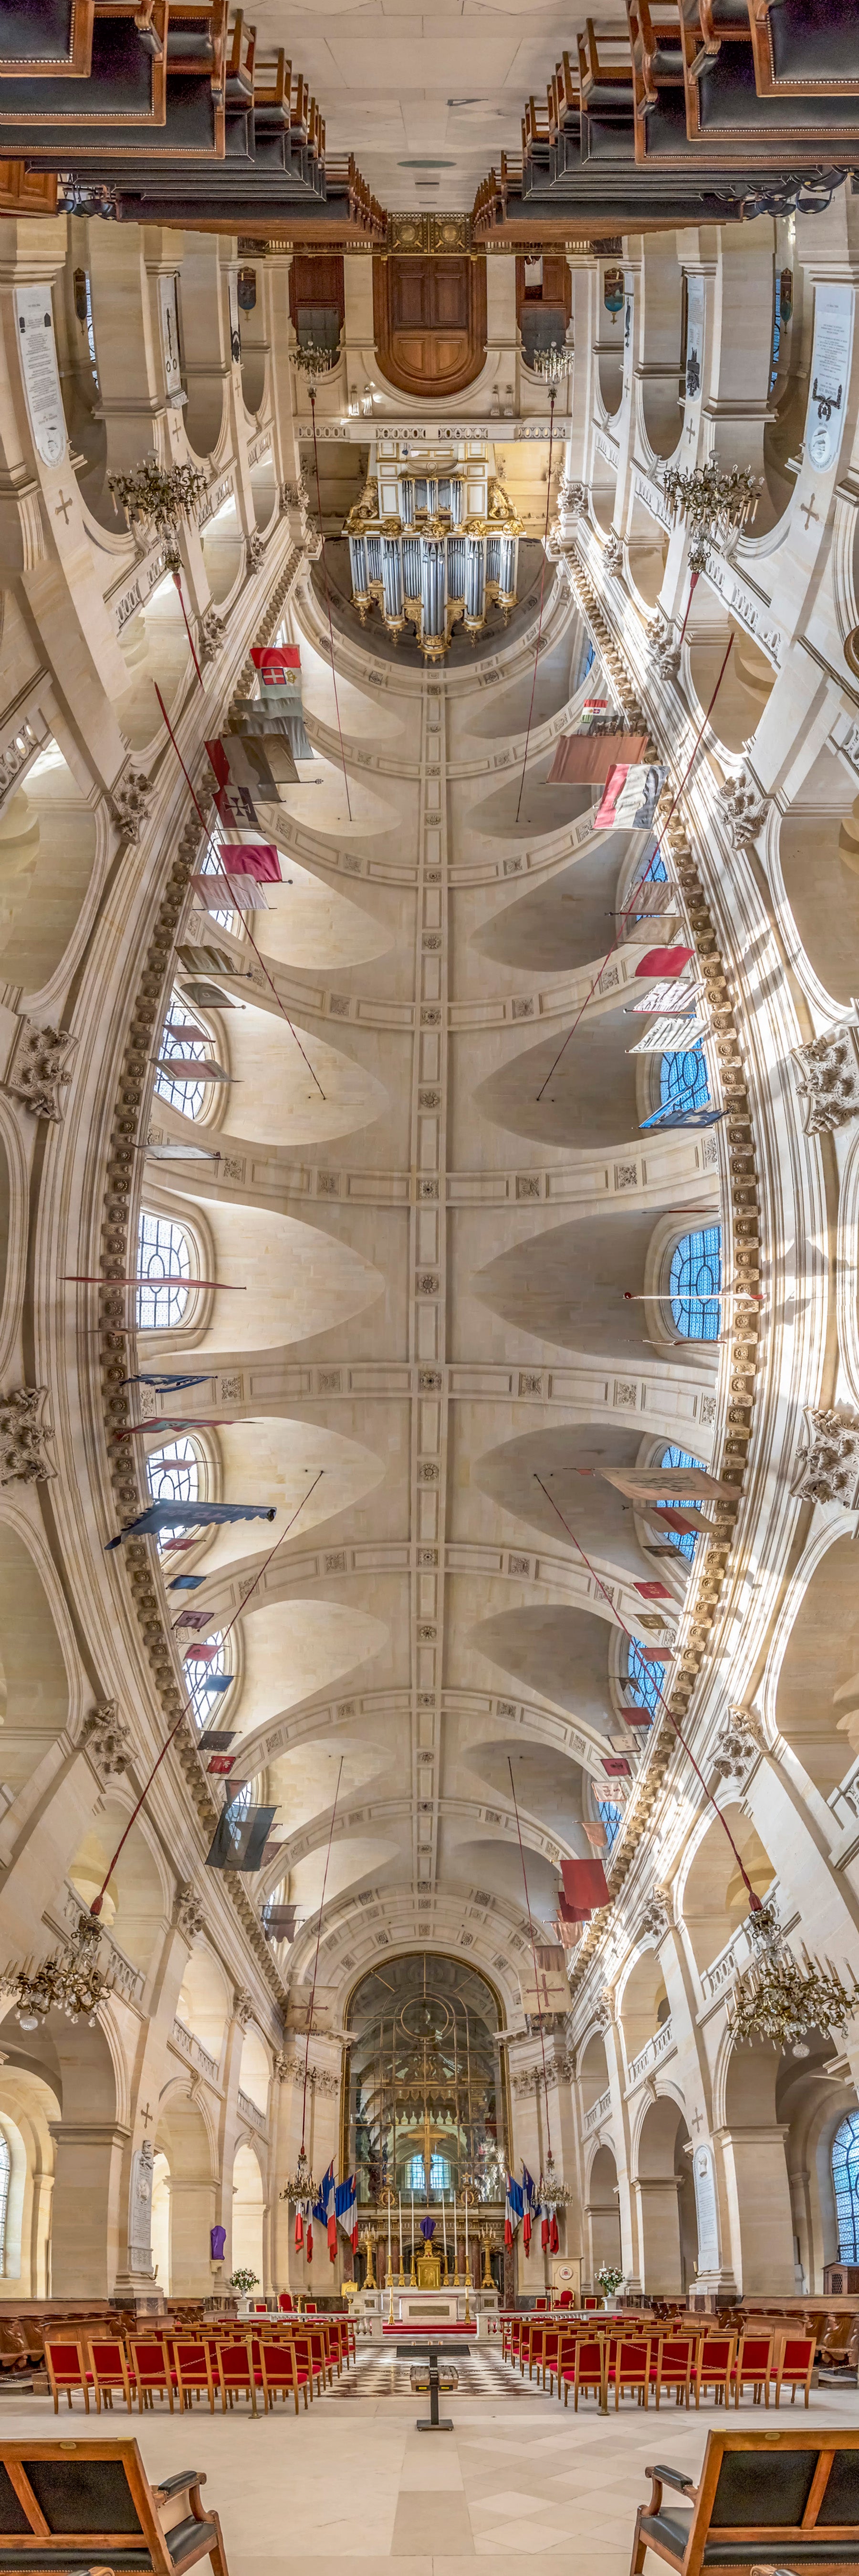 Cathedrale Saint-Louis des Invalides, Paris, France